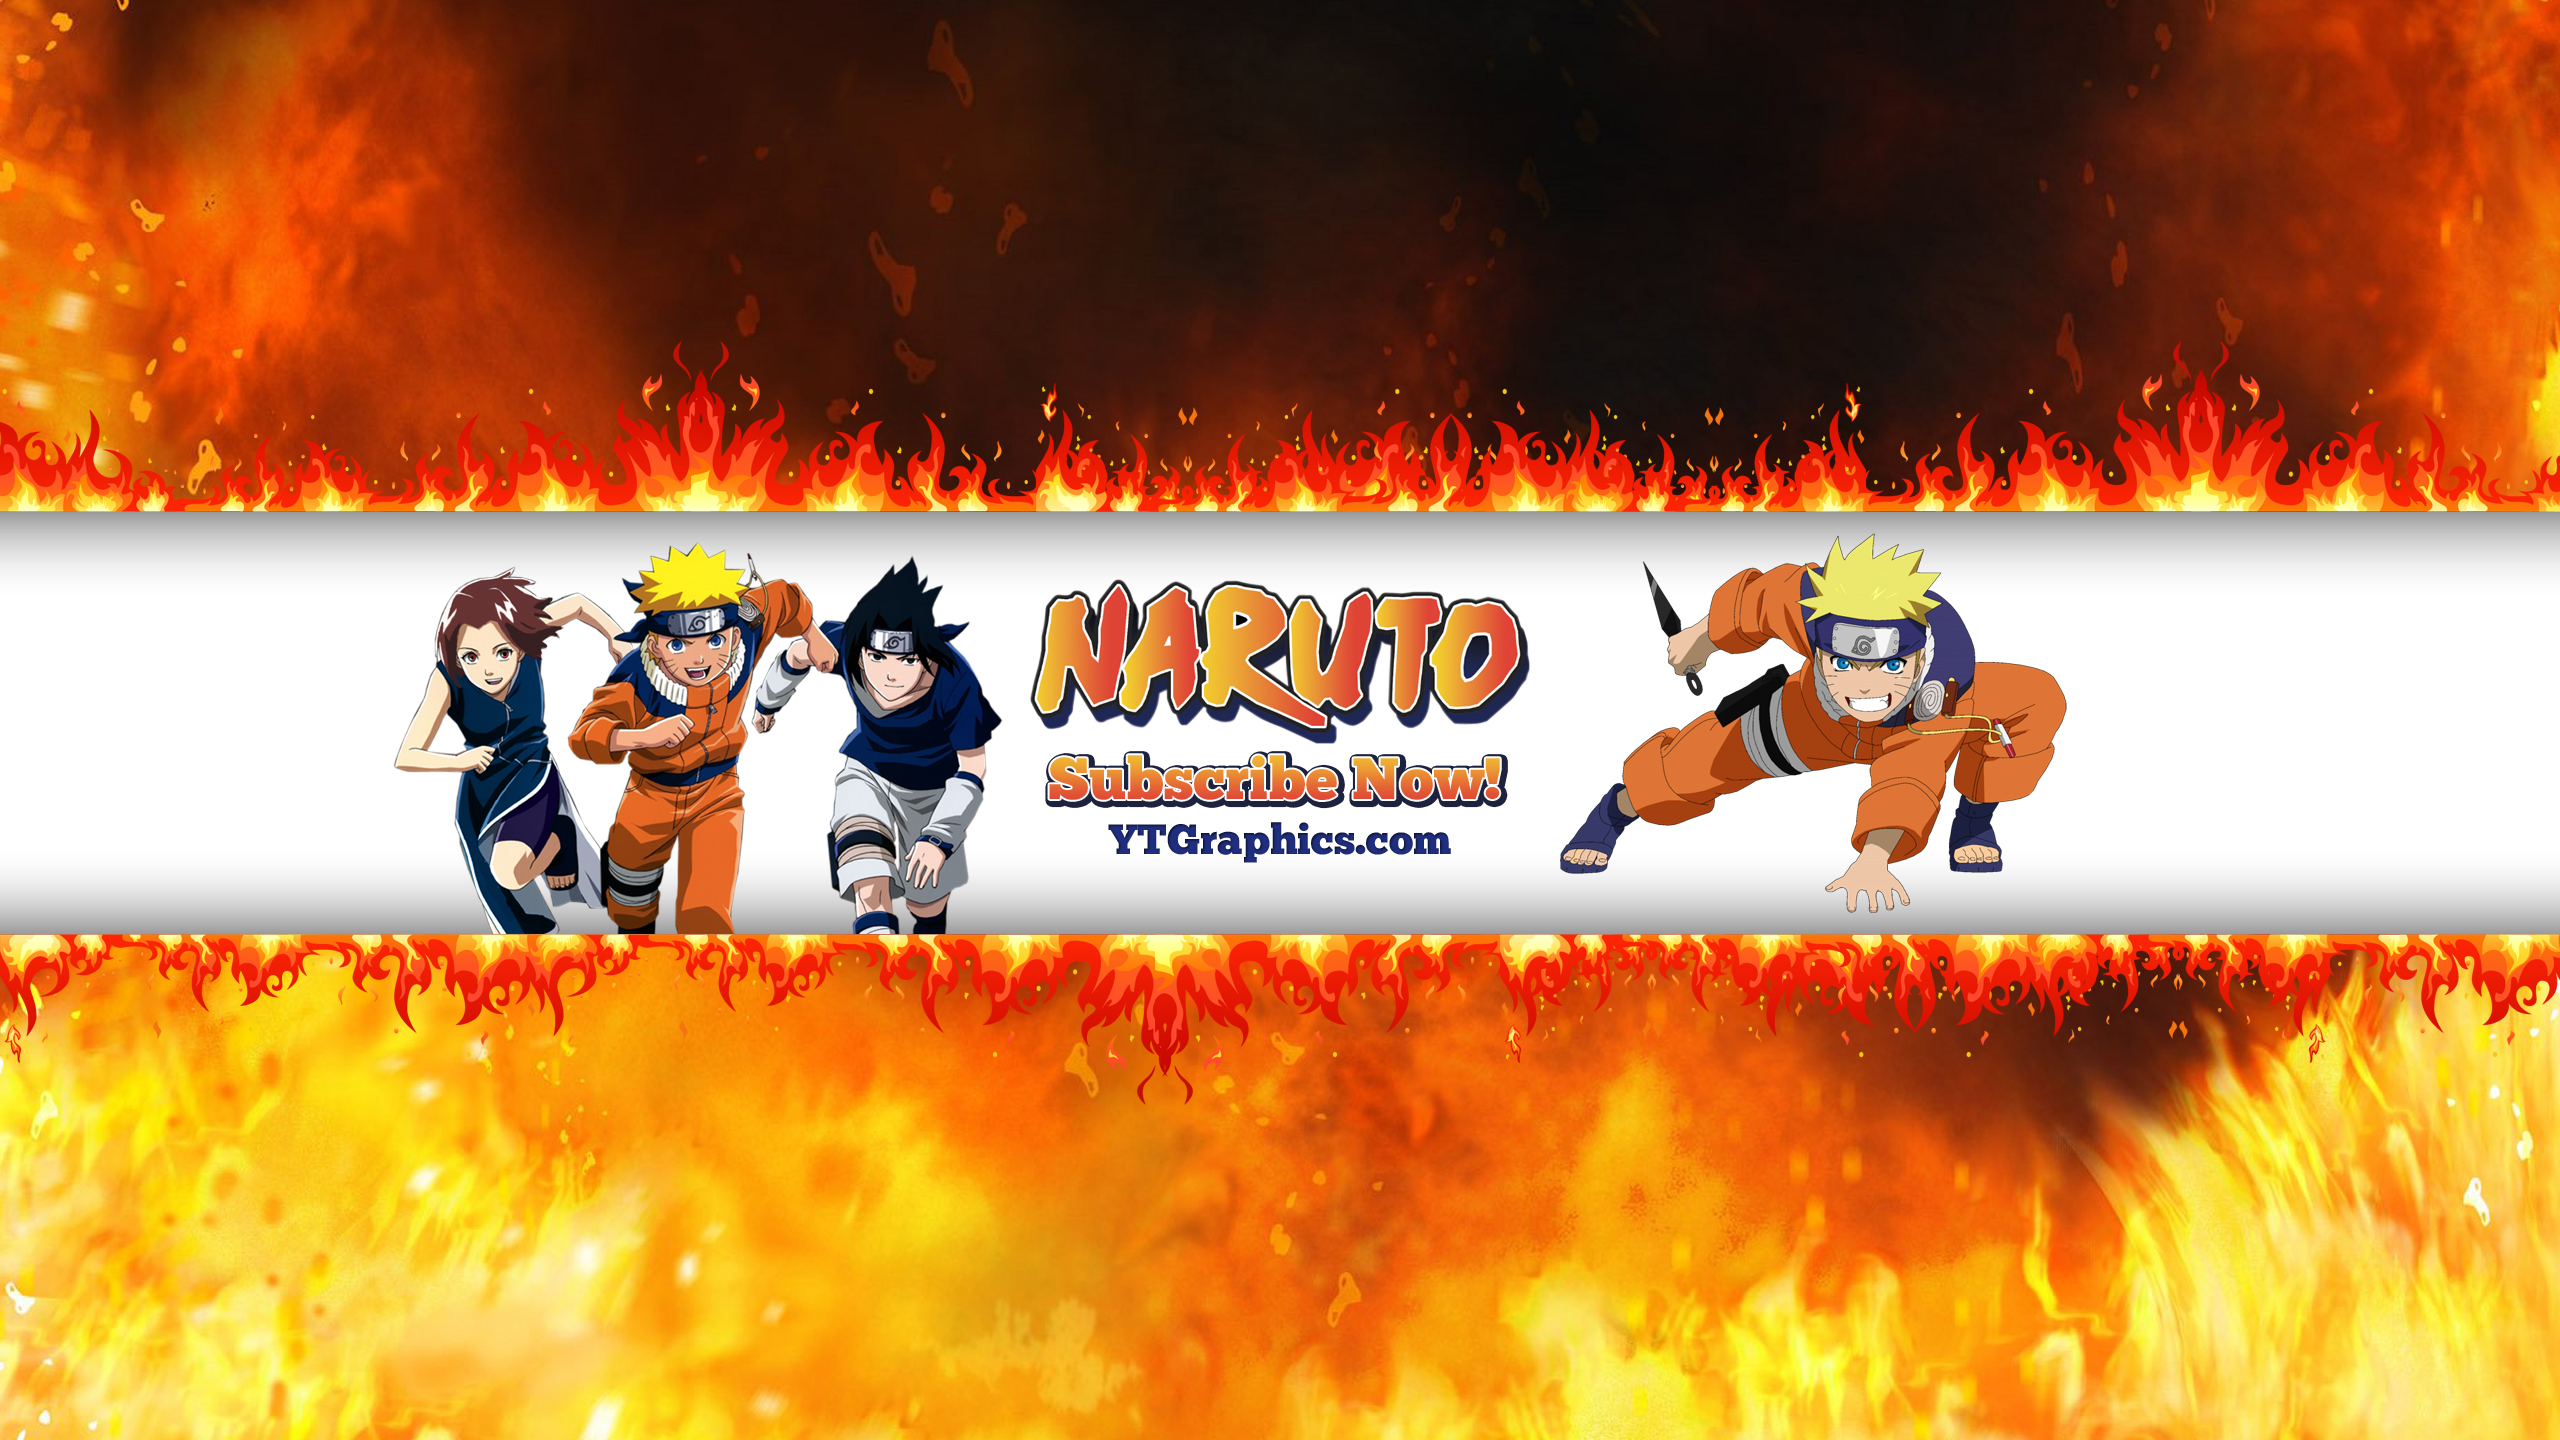 Naruto Youtube Banner zona naruto.